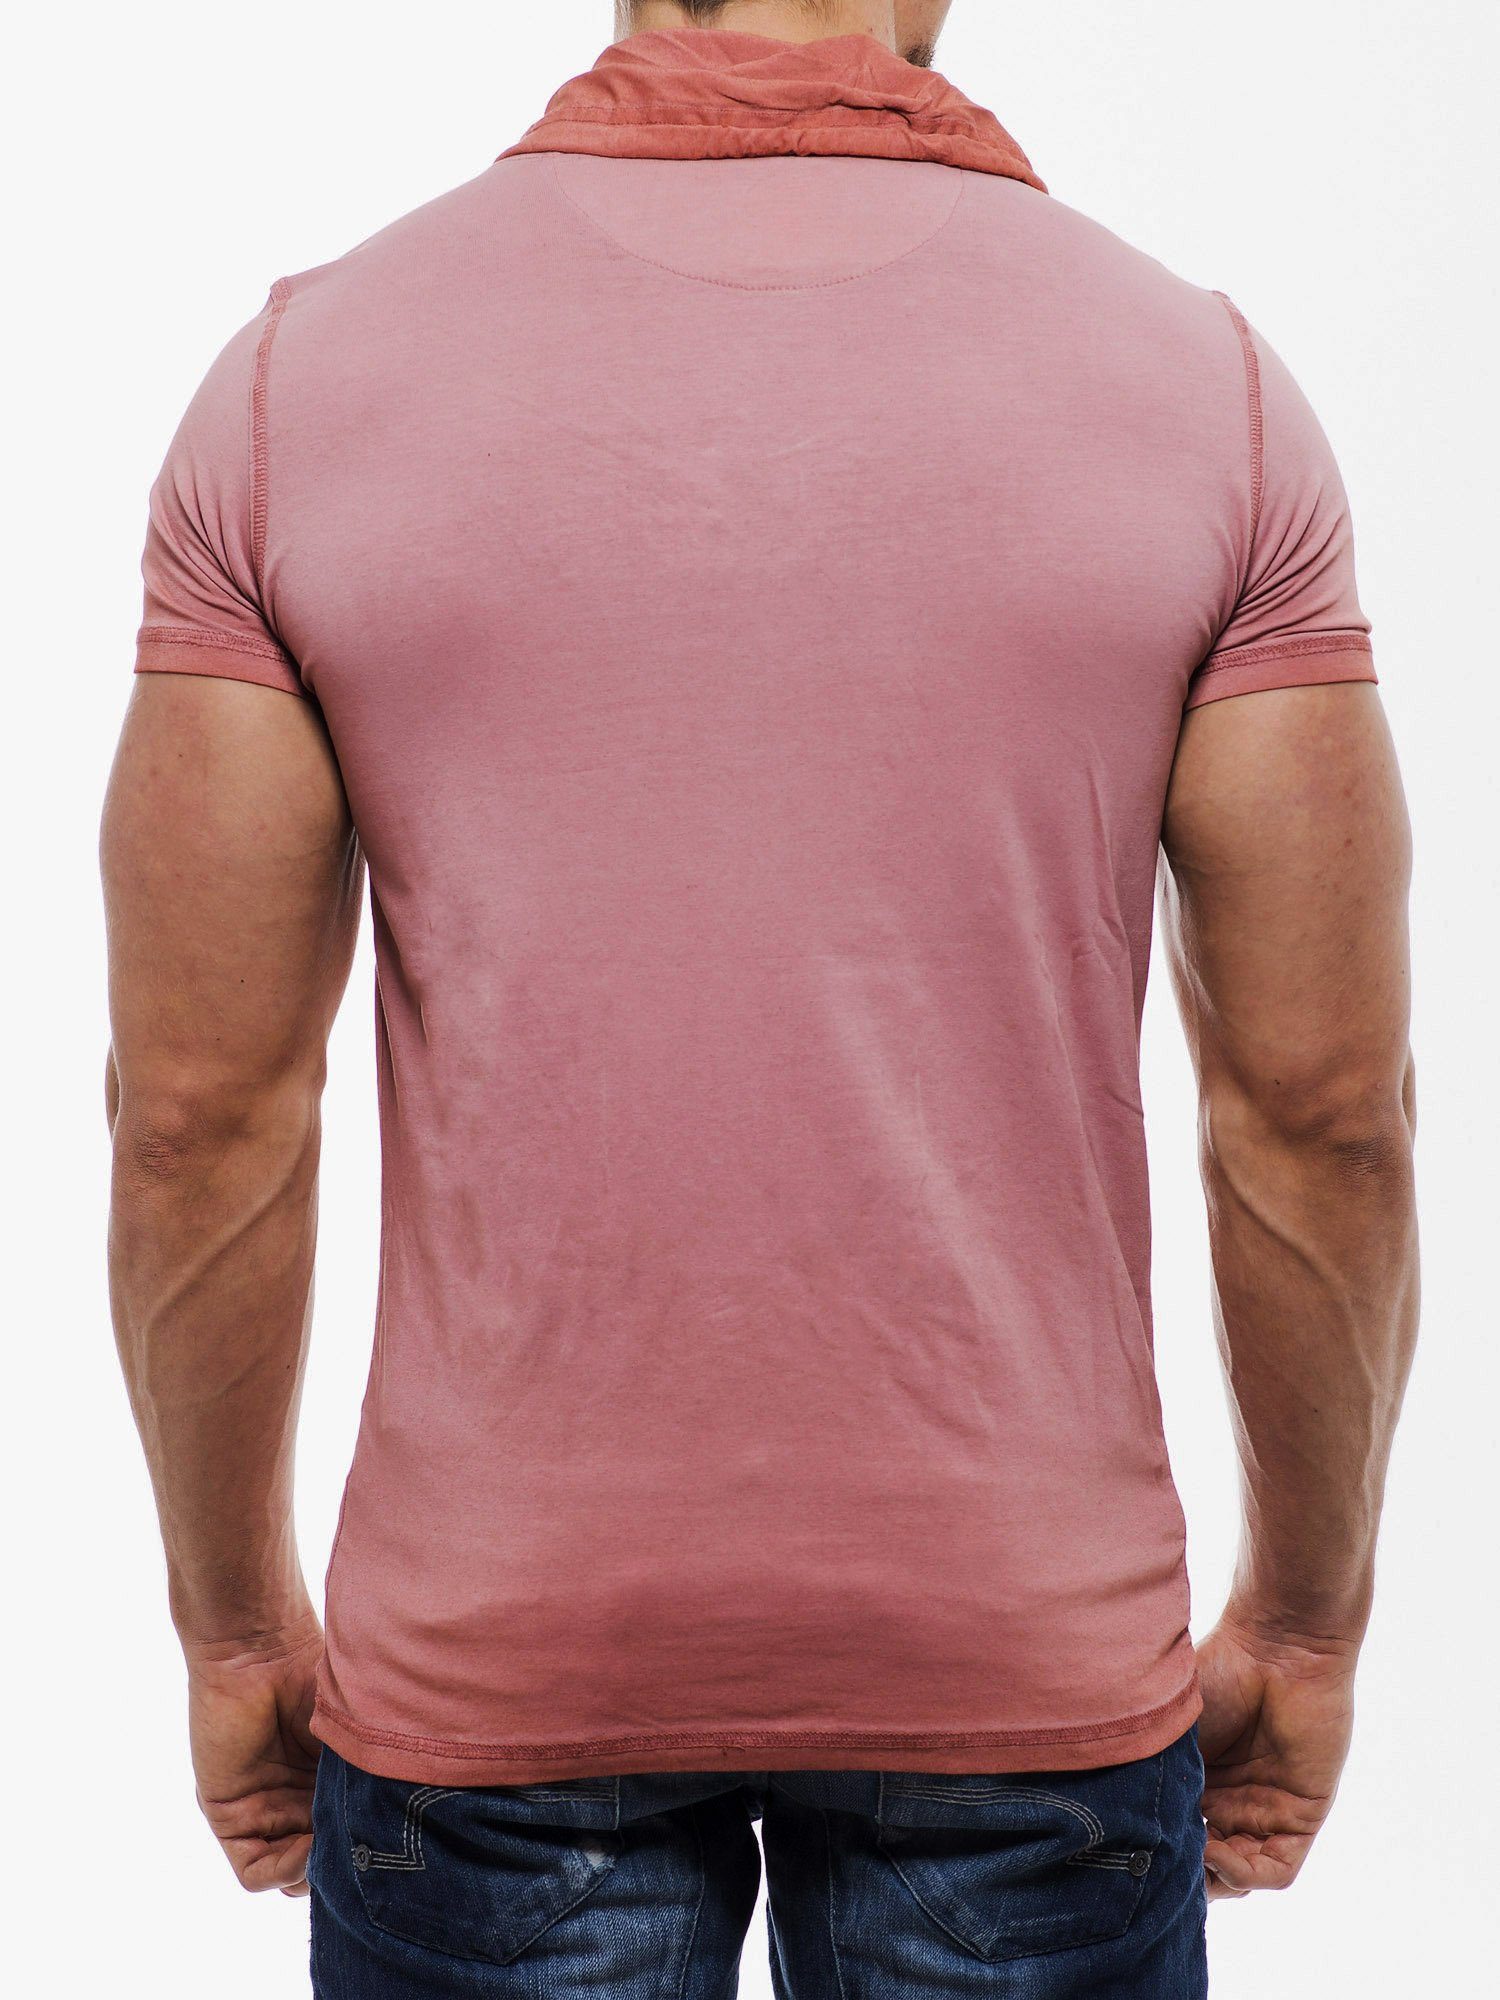 RMK T-Shirt T-Shirts Modelle Streetwear mit Freizeit Schal-Kragen, Braun/Rot